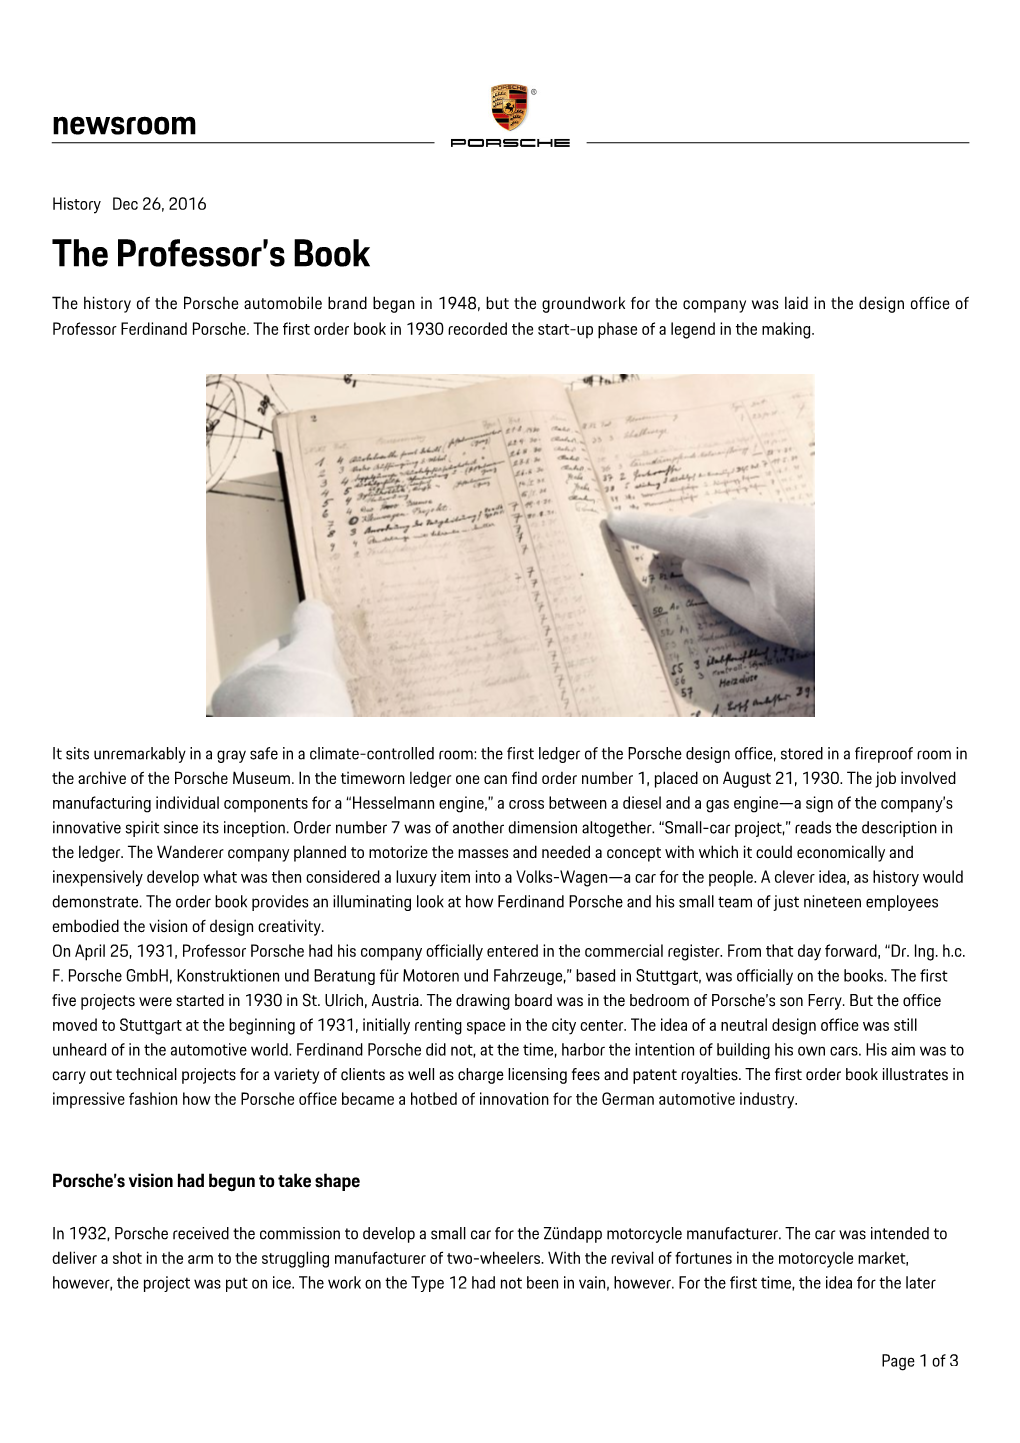 The Professor's Book